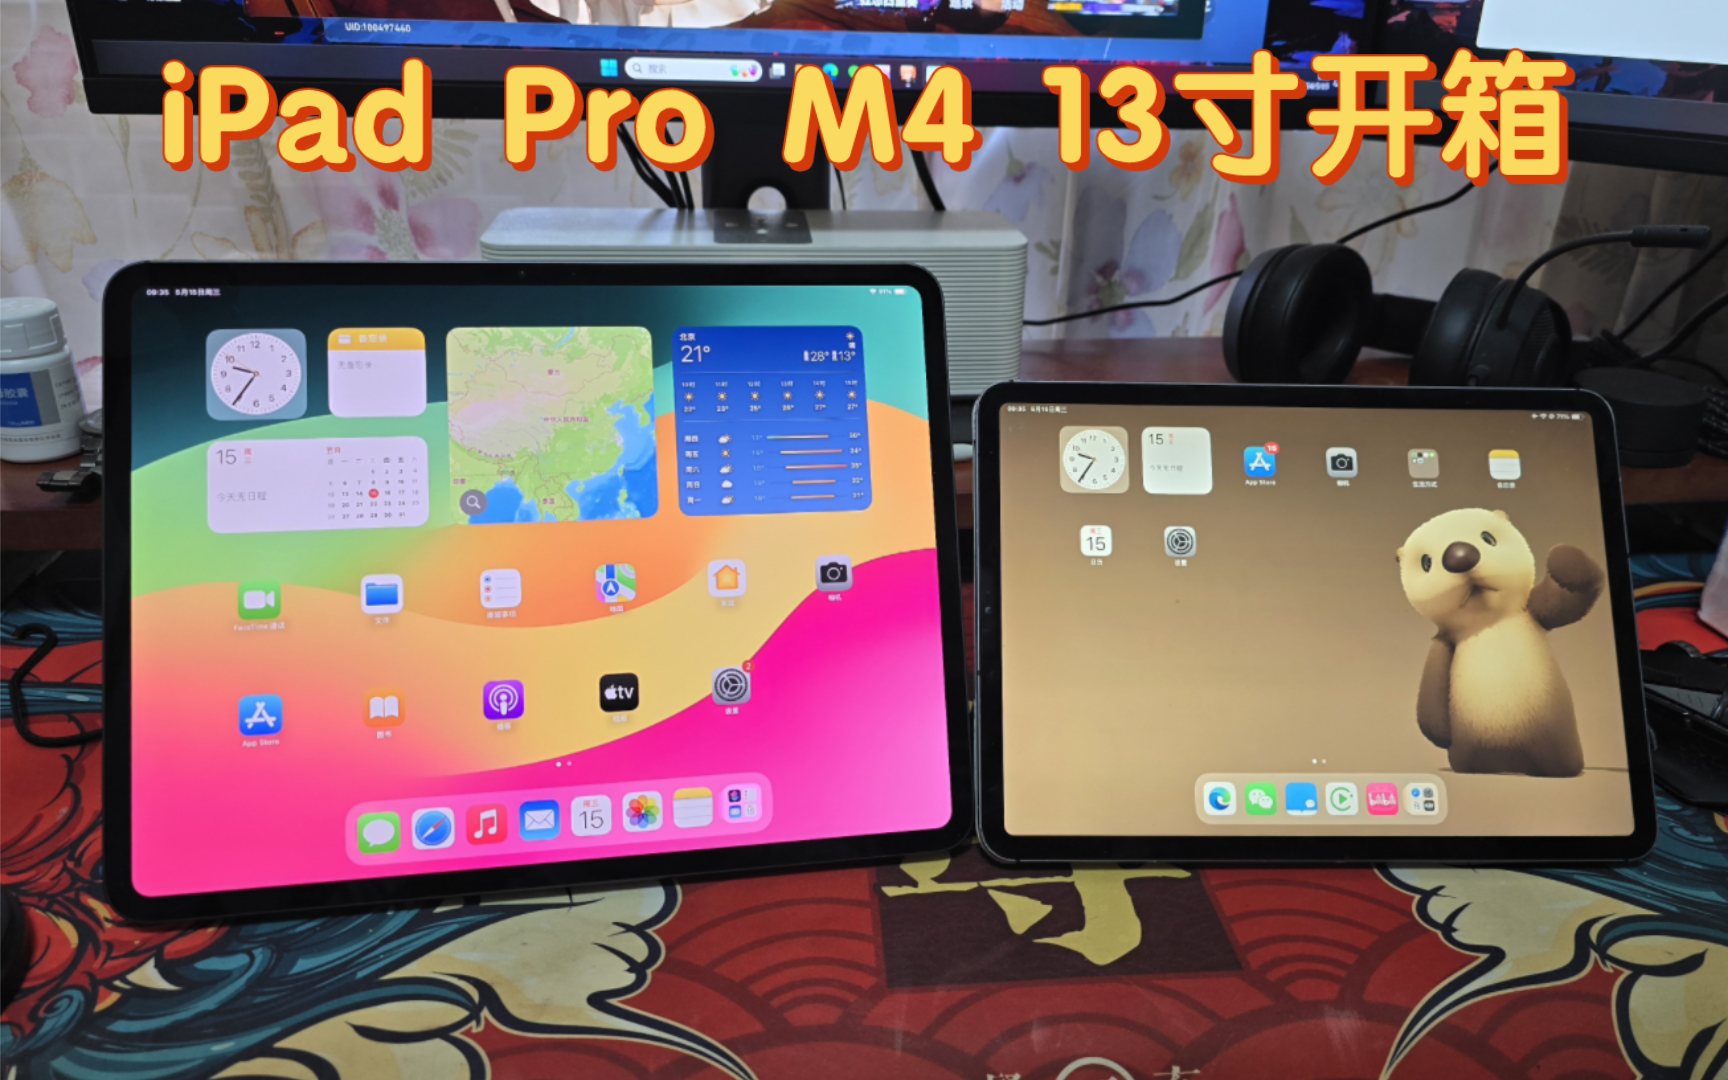 iPad Pro M4 13寸开箱碎碎念